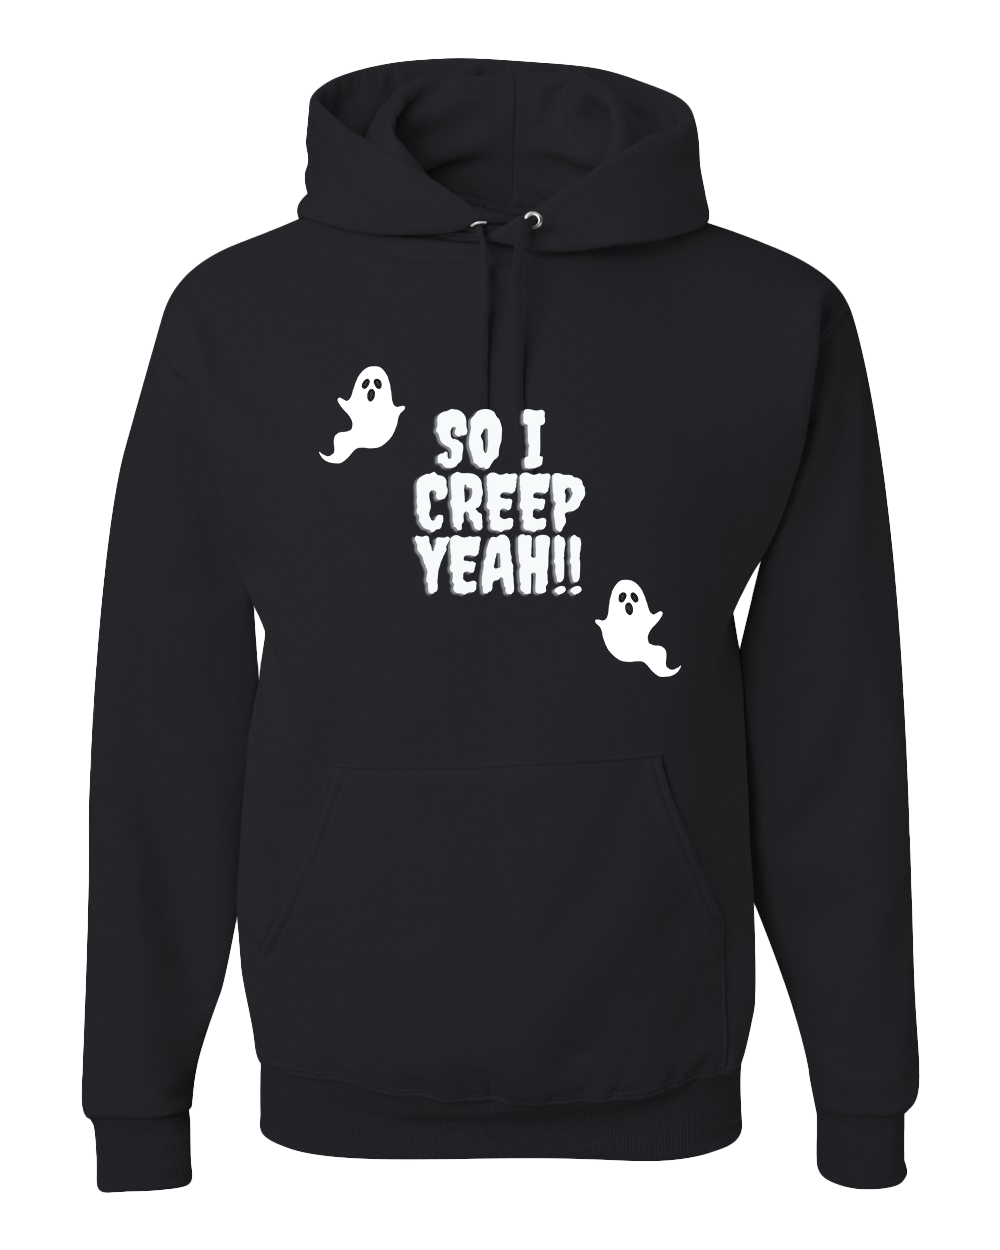 So I Creep Yeah!! Hooded Sweatshirt - Black